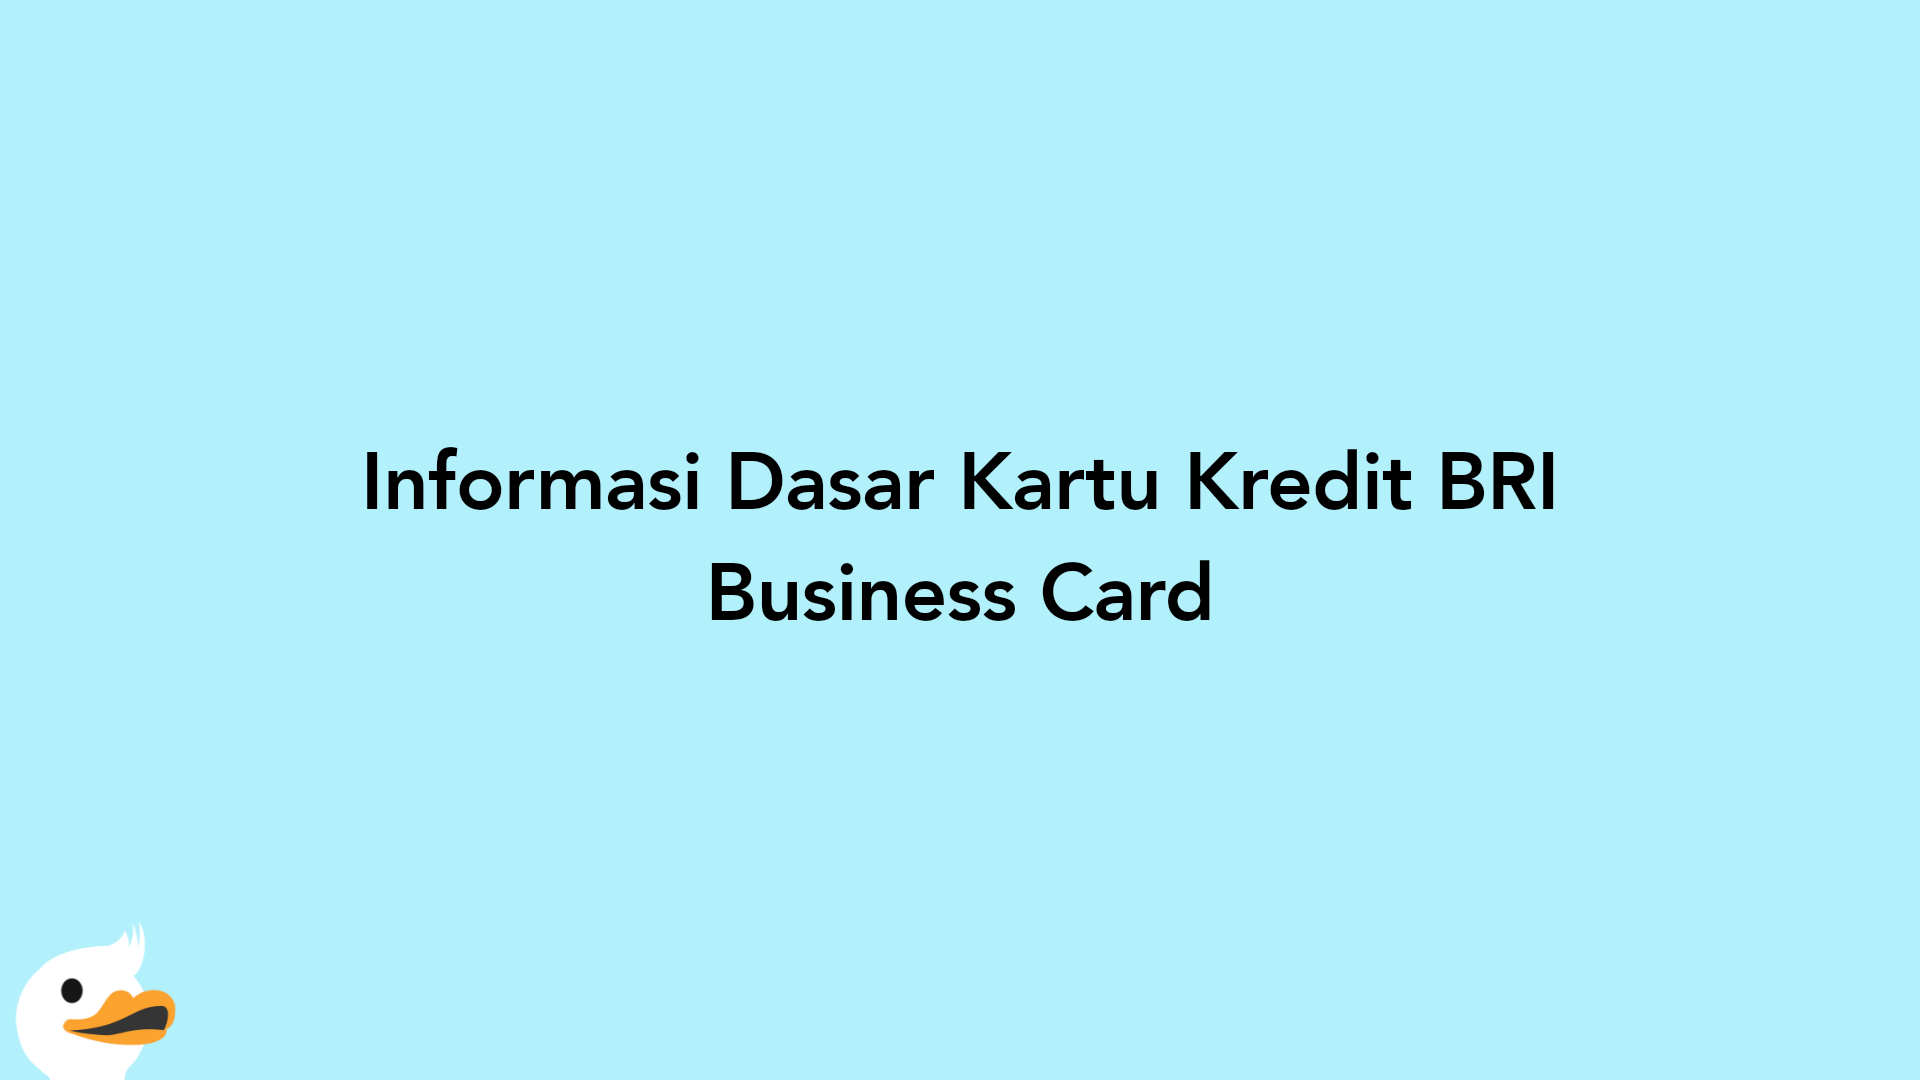 Informasi Dasar Kartu Kredit BRI Business Card